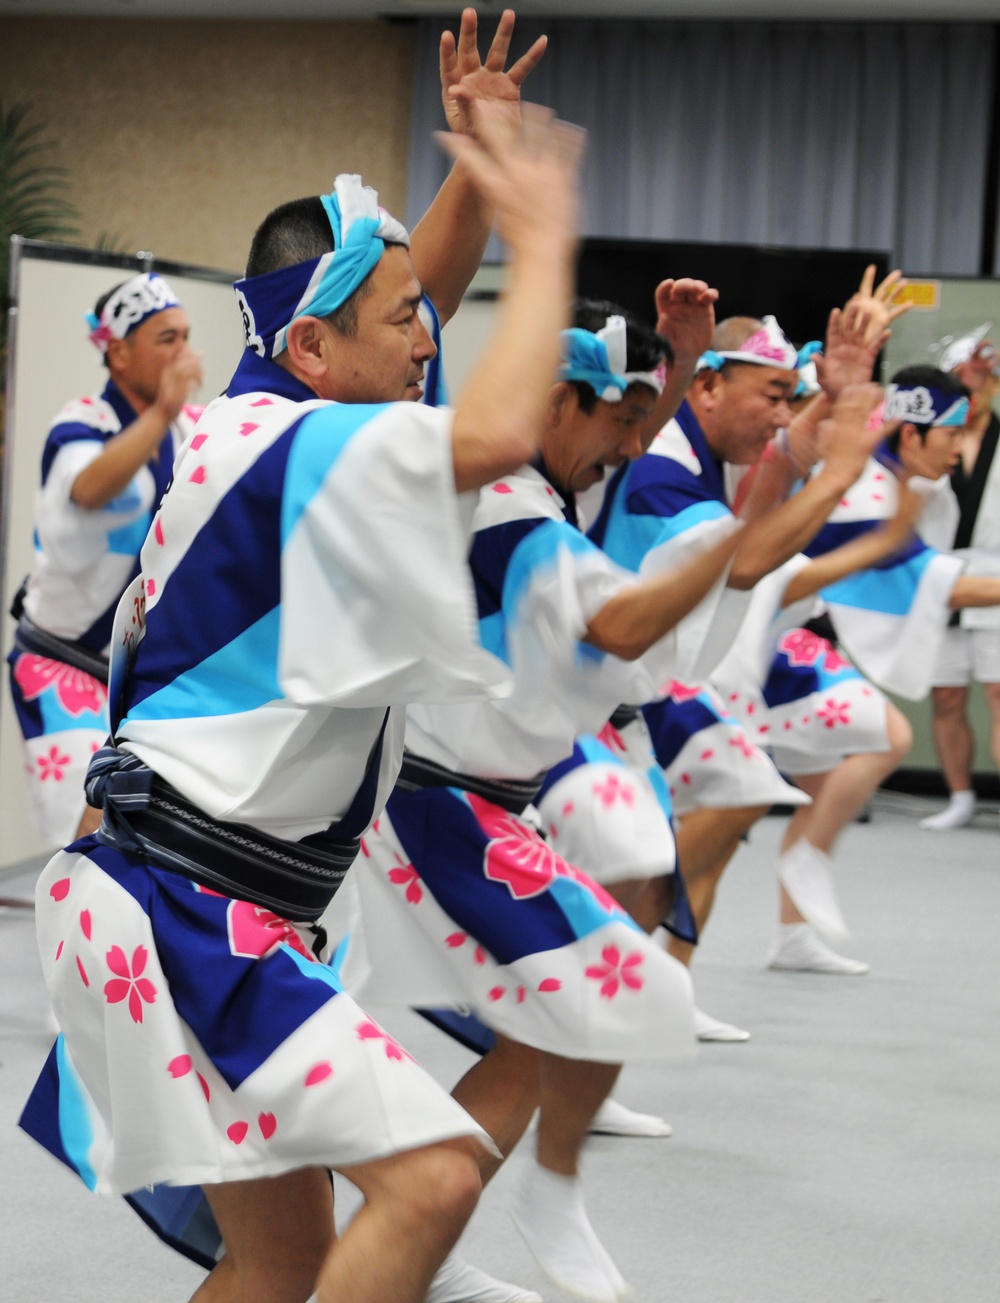 Yama Sakura 61 cultural activities